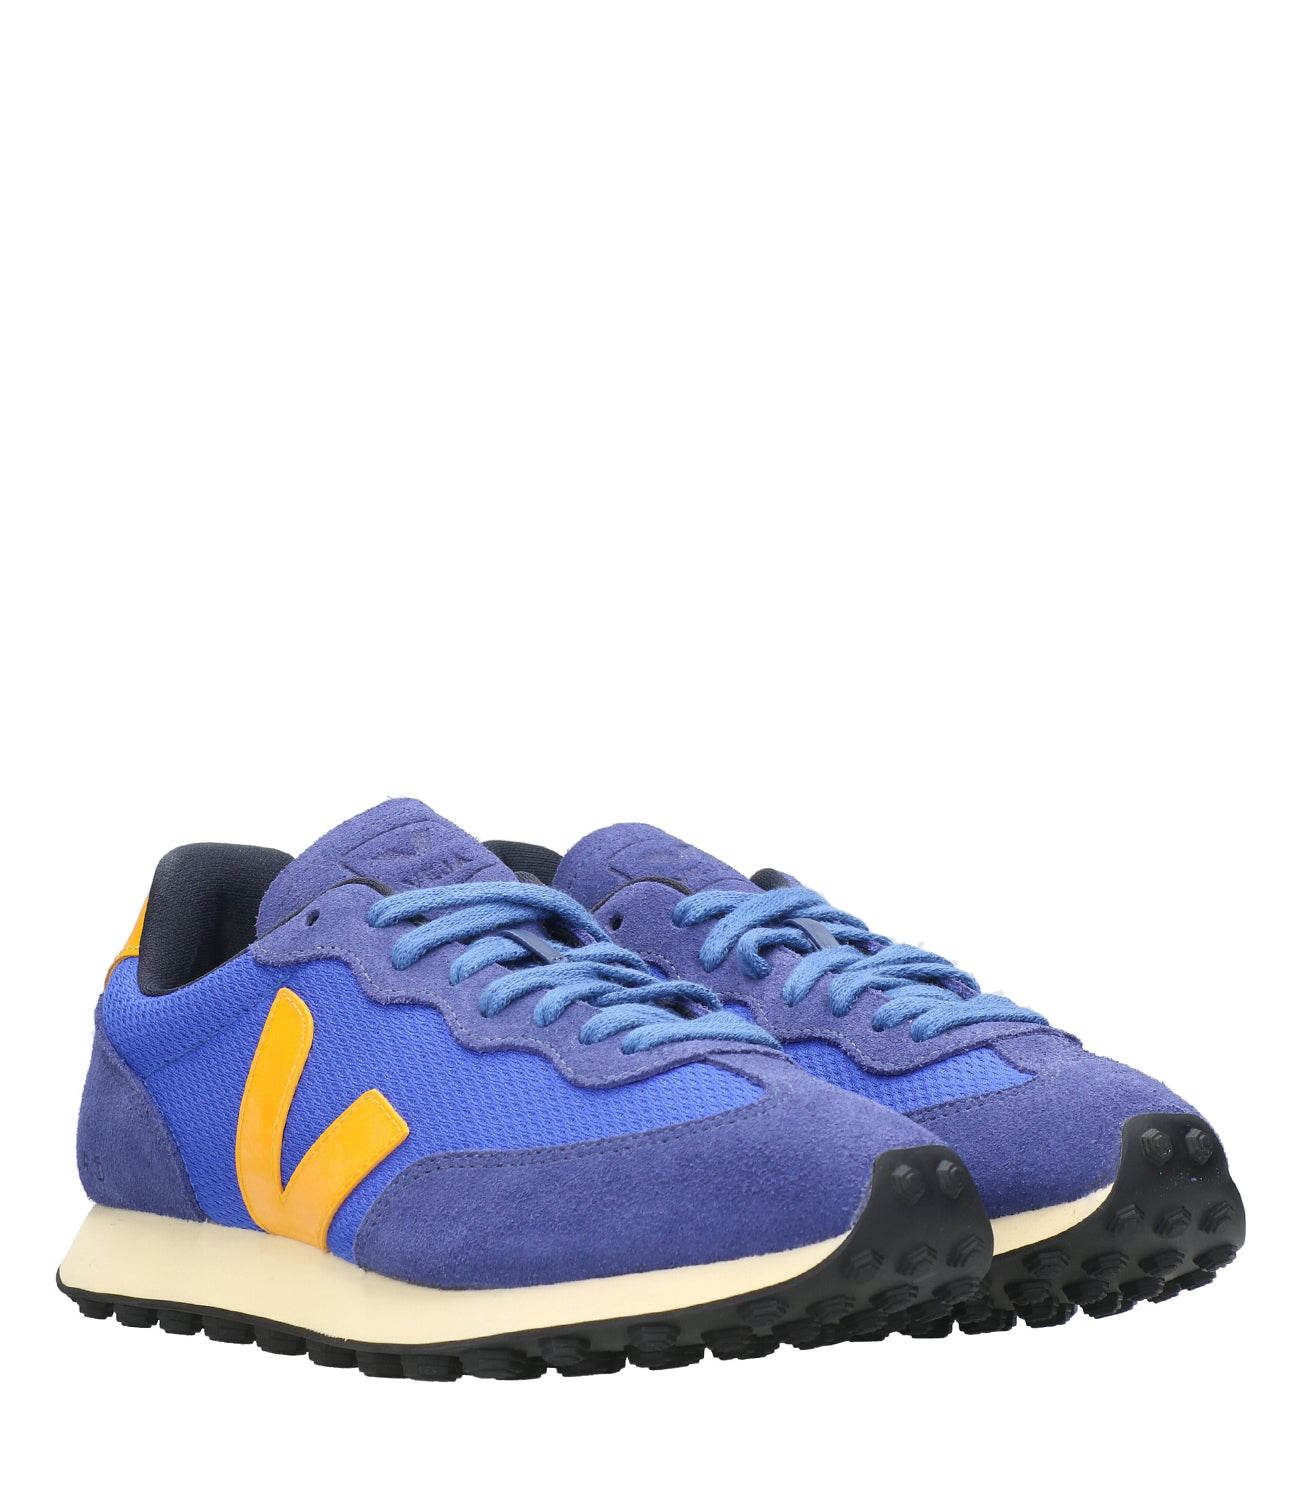 Veja | Sneakers Rio Branco Electric Blue and Orange